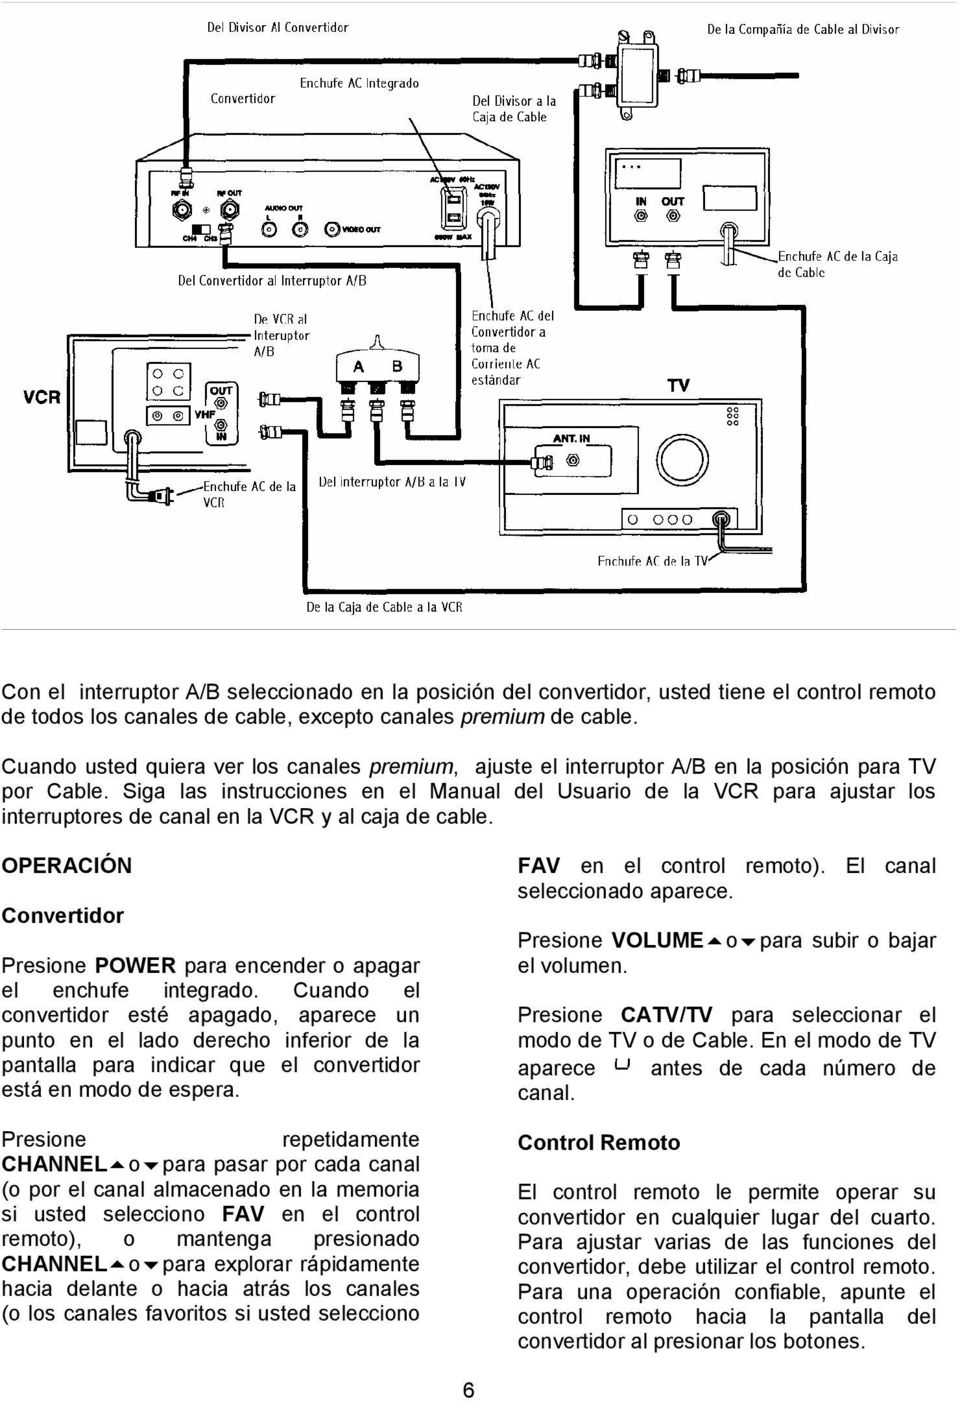 Siga las instrucciones en el Manual del Usuario de la VCR para ajustar los interruptores de canal en la VCR y al caja de cable.